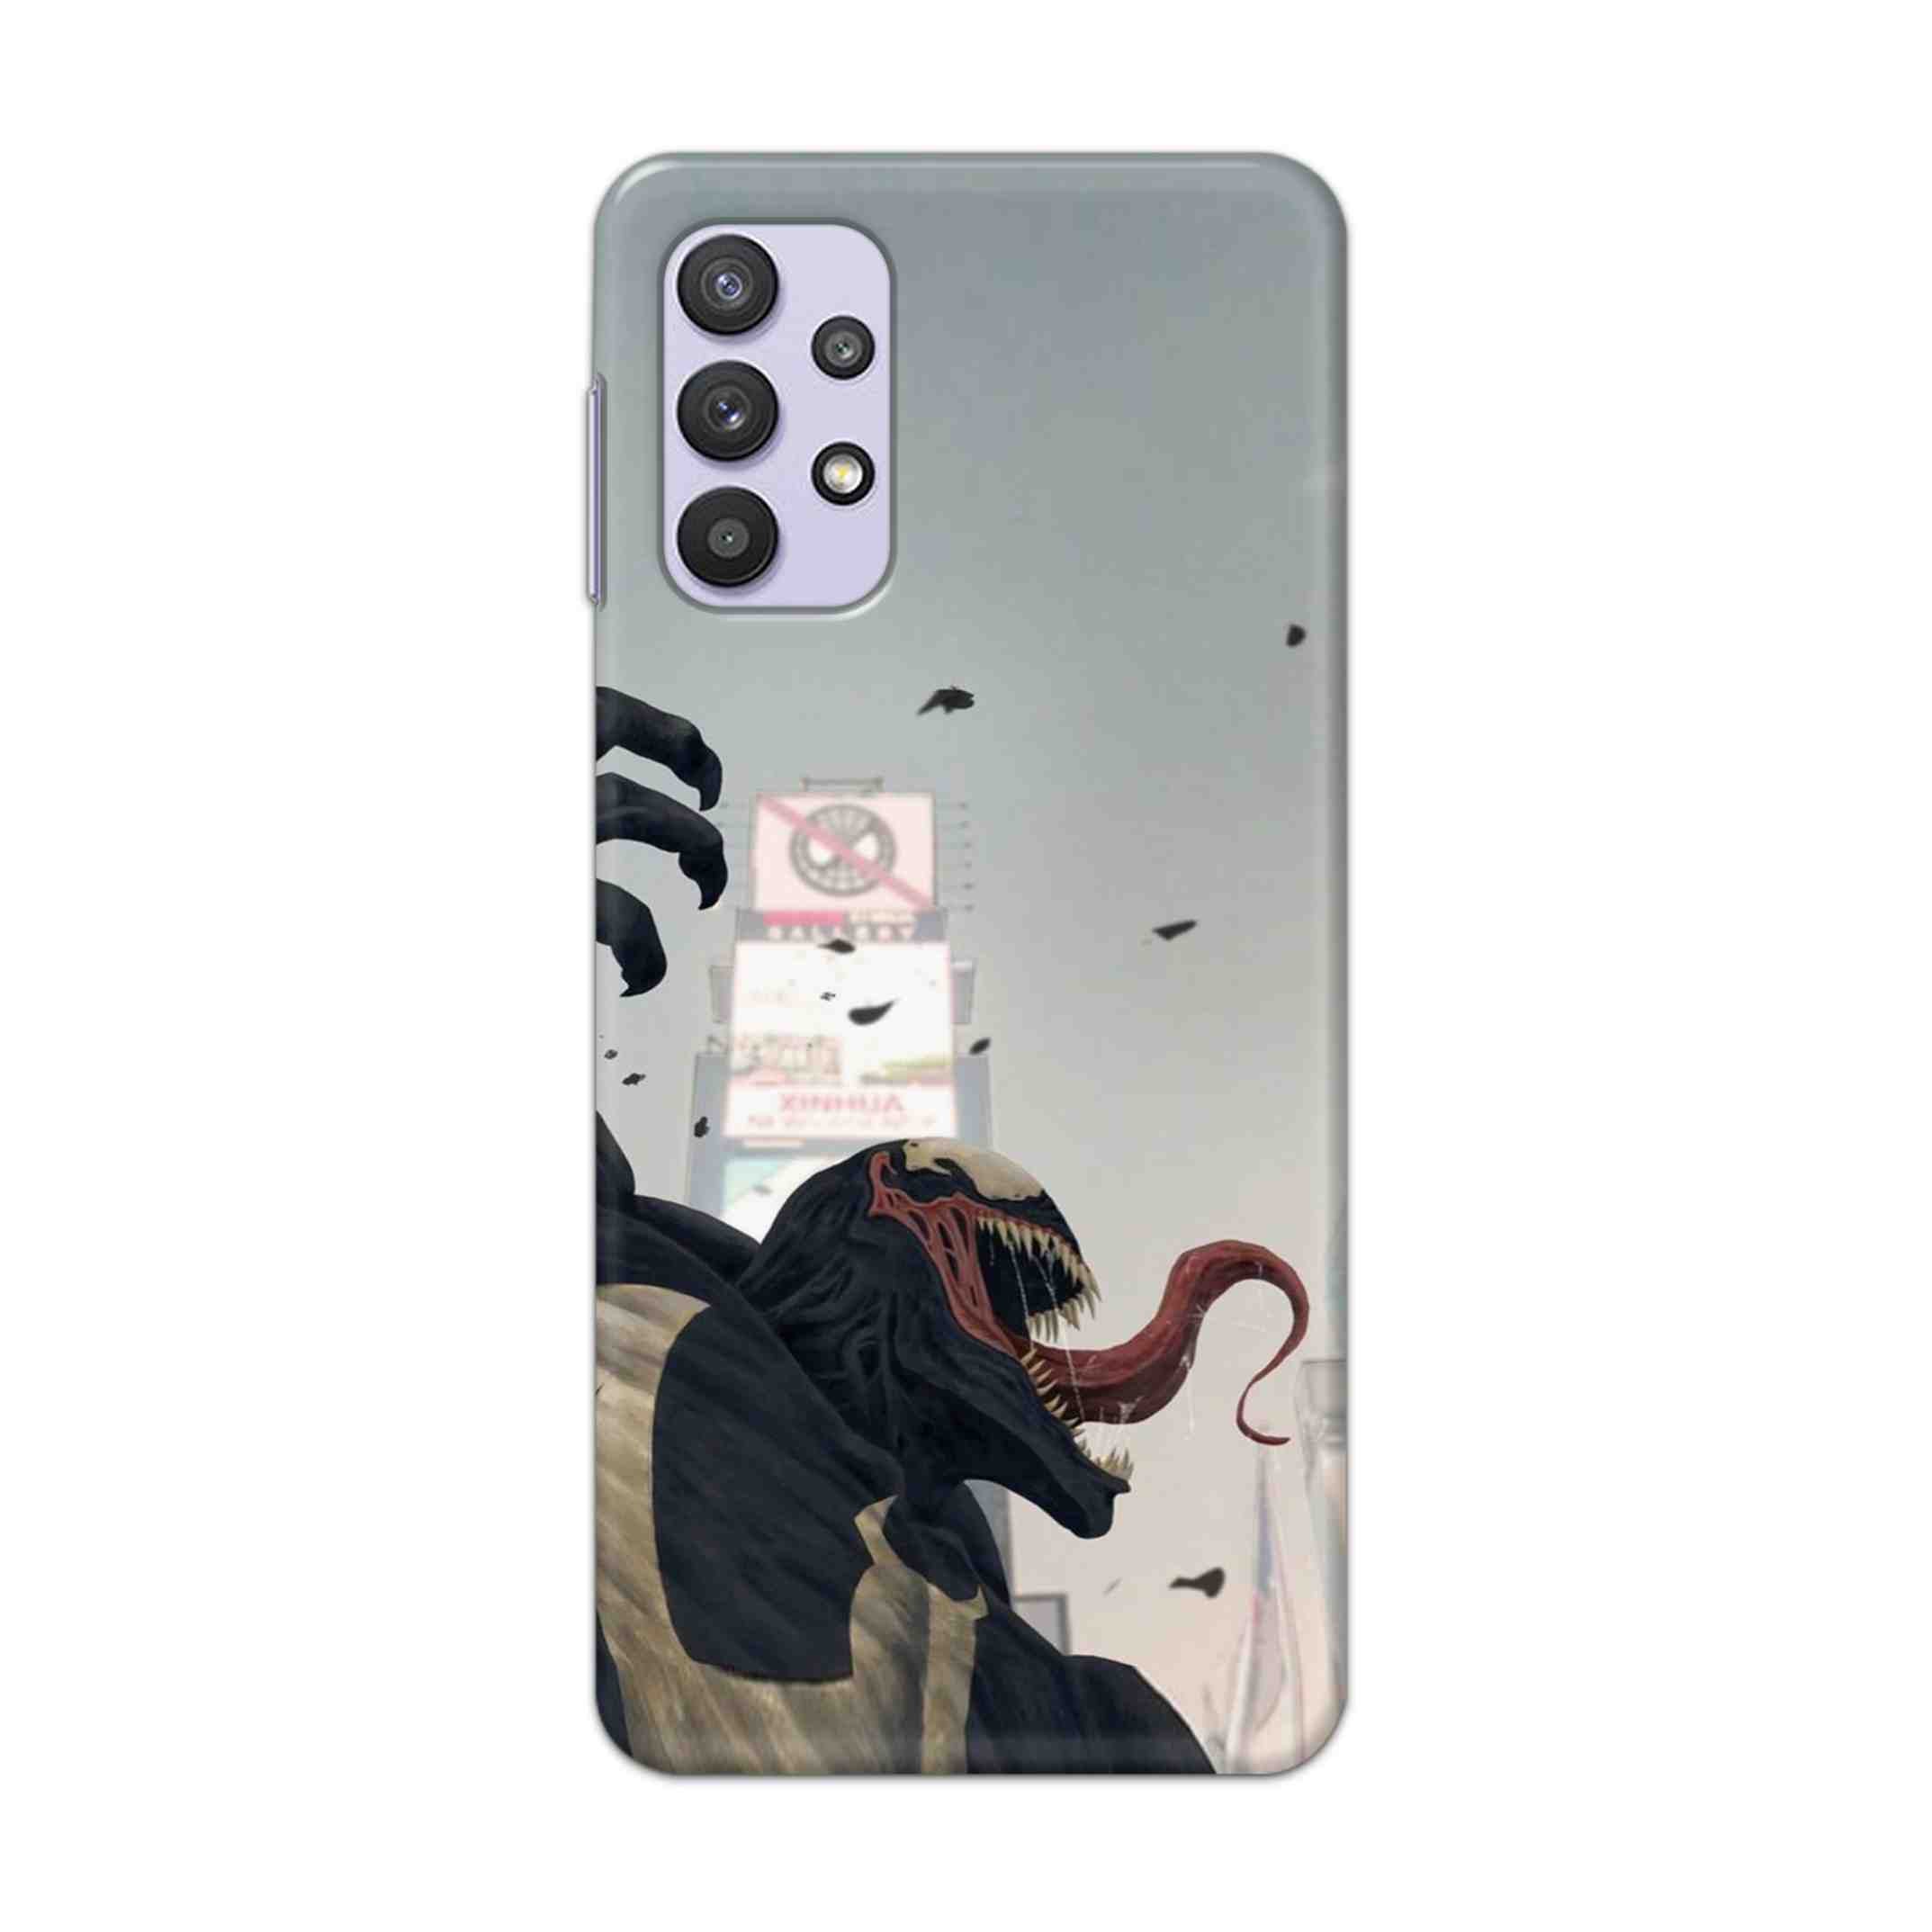 Buy Venom Crunch Hard Back Mobile Phone Case Cover For Samsung A32 4G Online